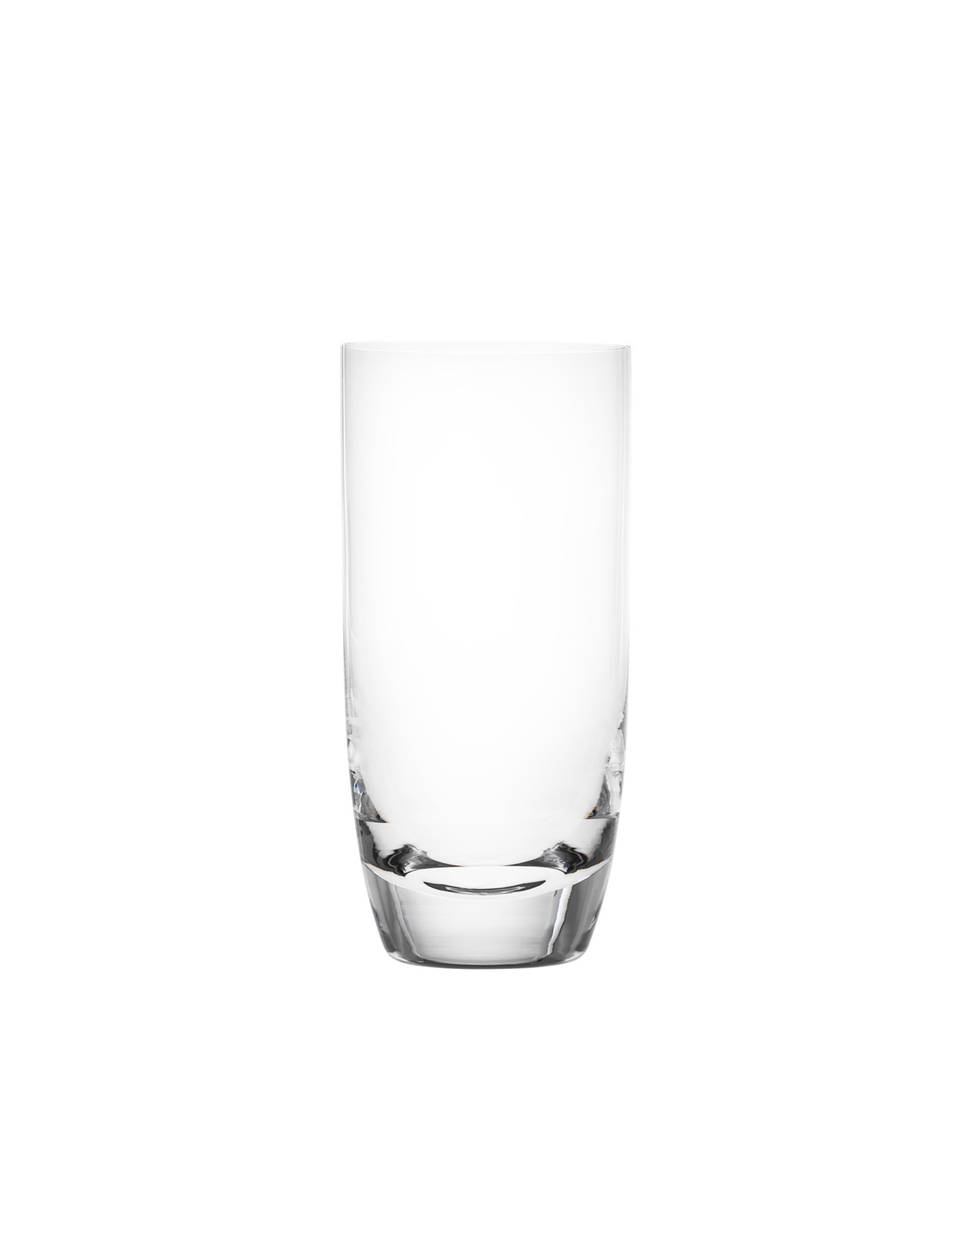 Harmony sklenice na vodu, 350 ml